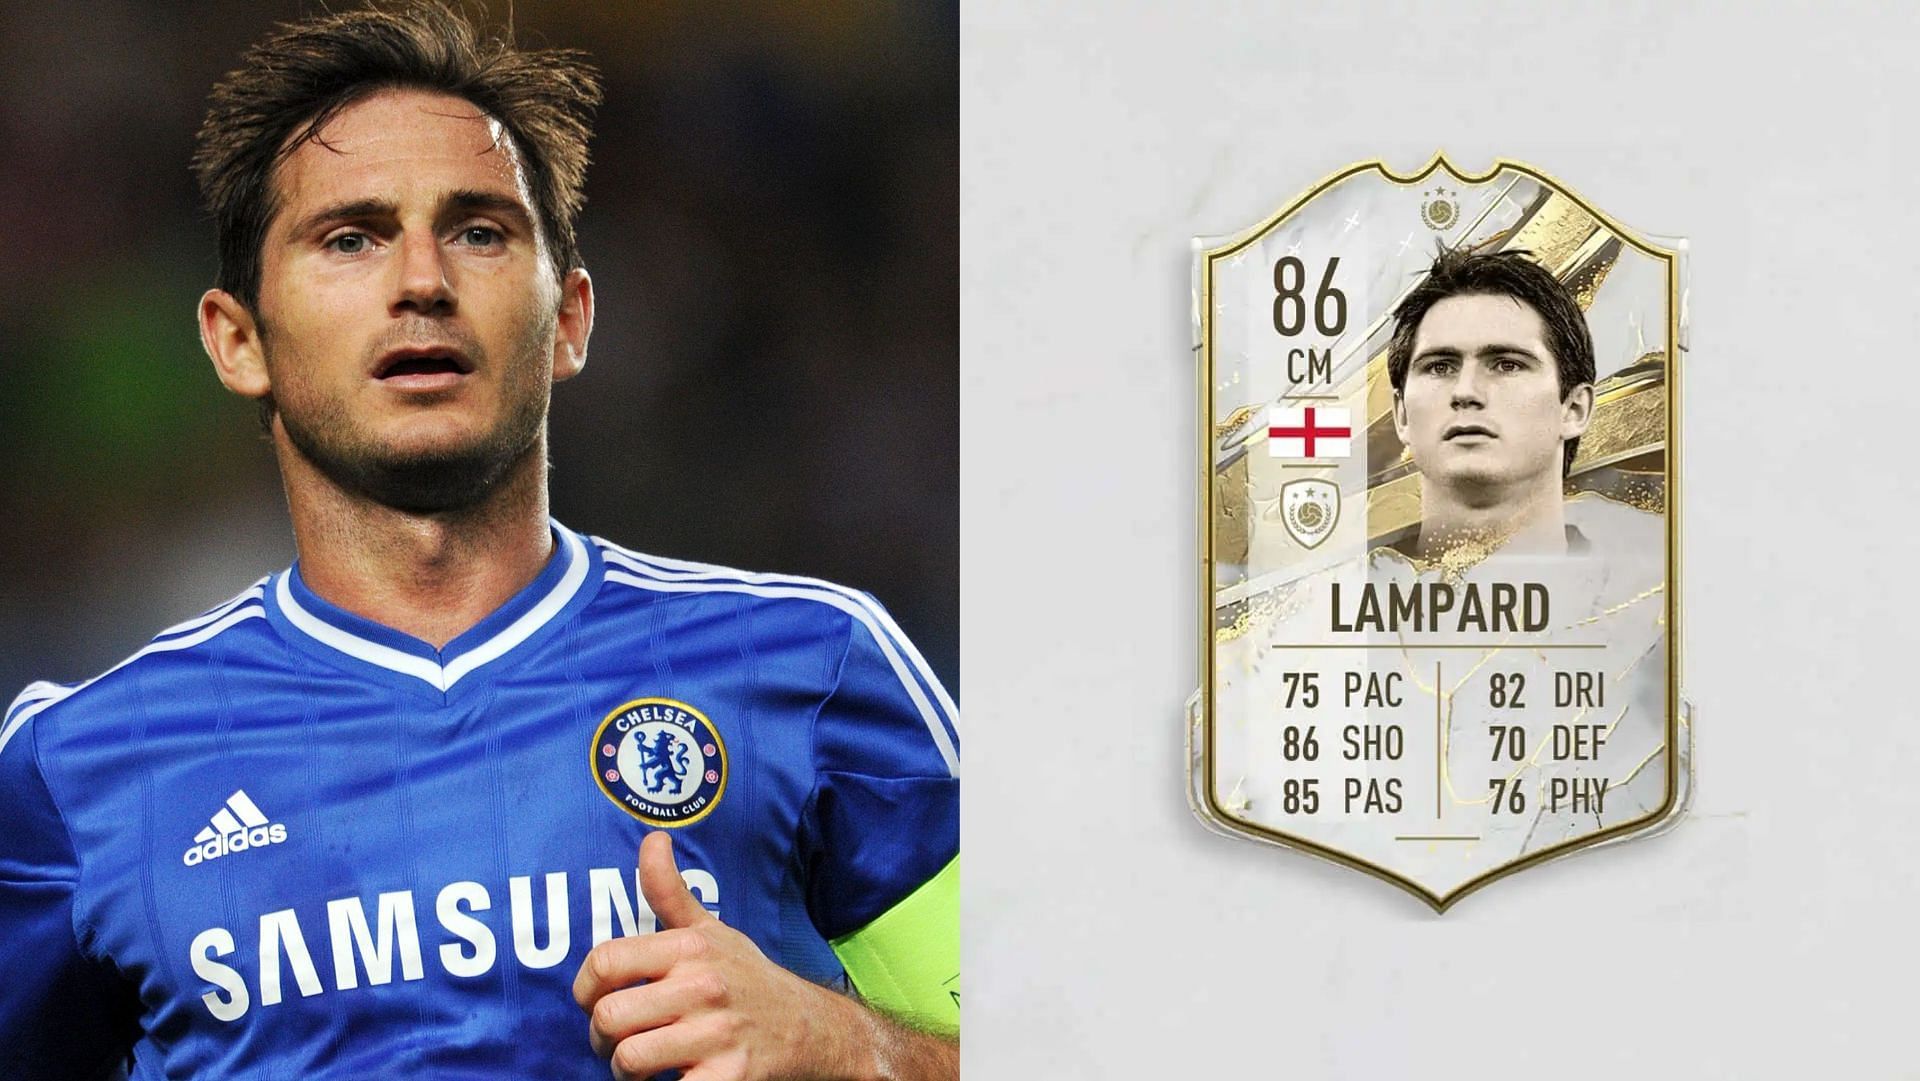 FIFA 23: Frank Lampard DME, como completar o SBC do jeito mais barato